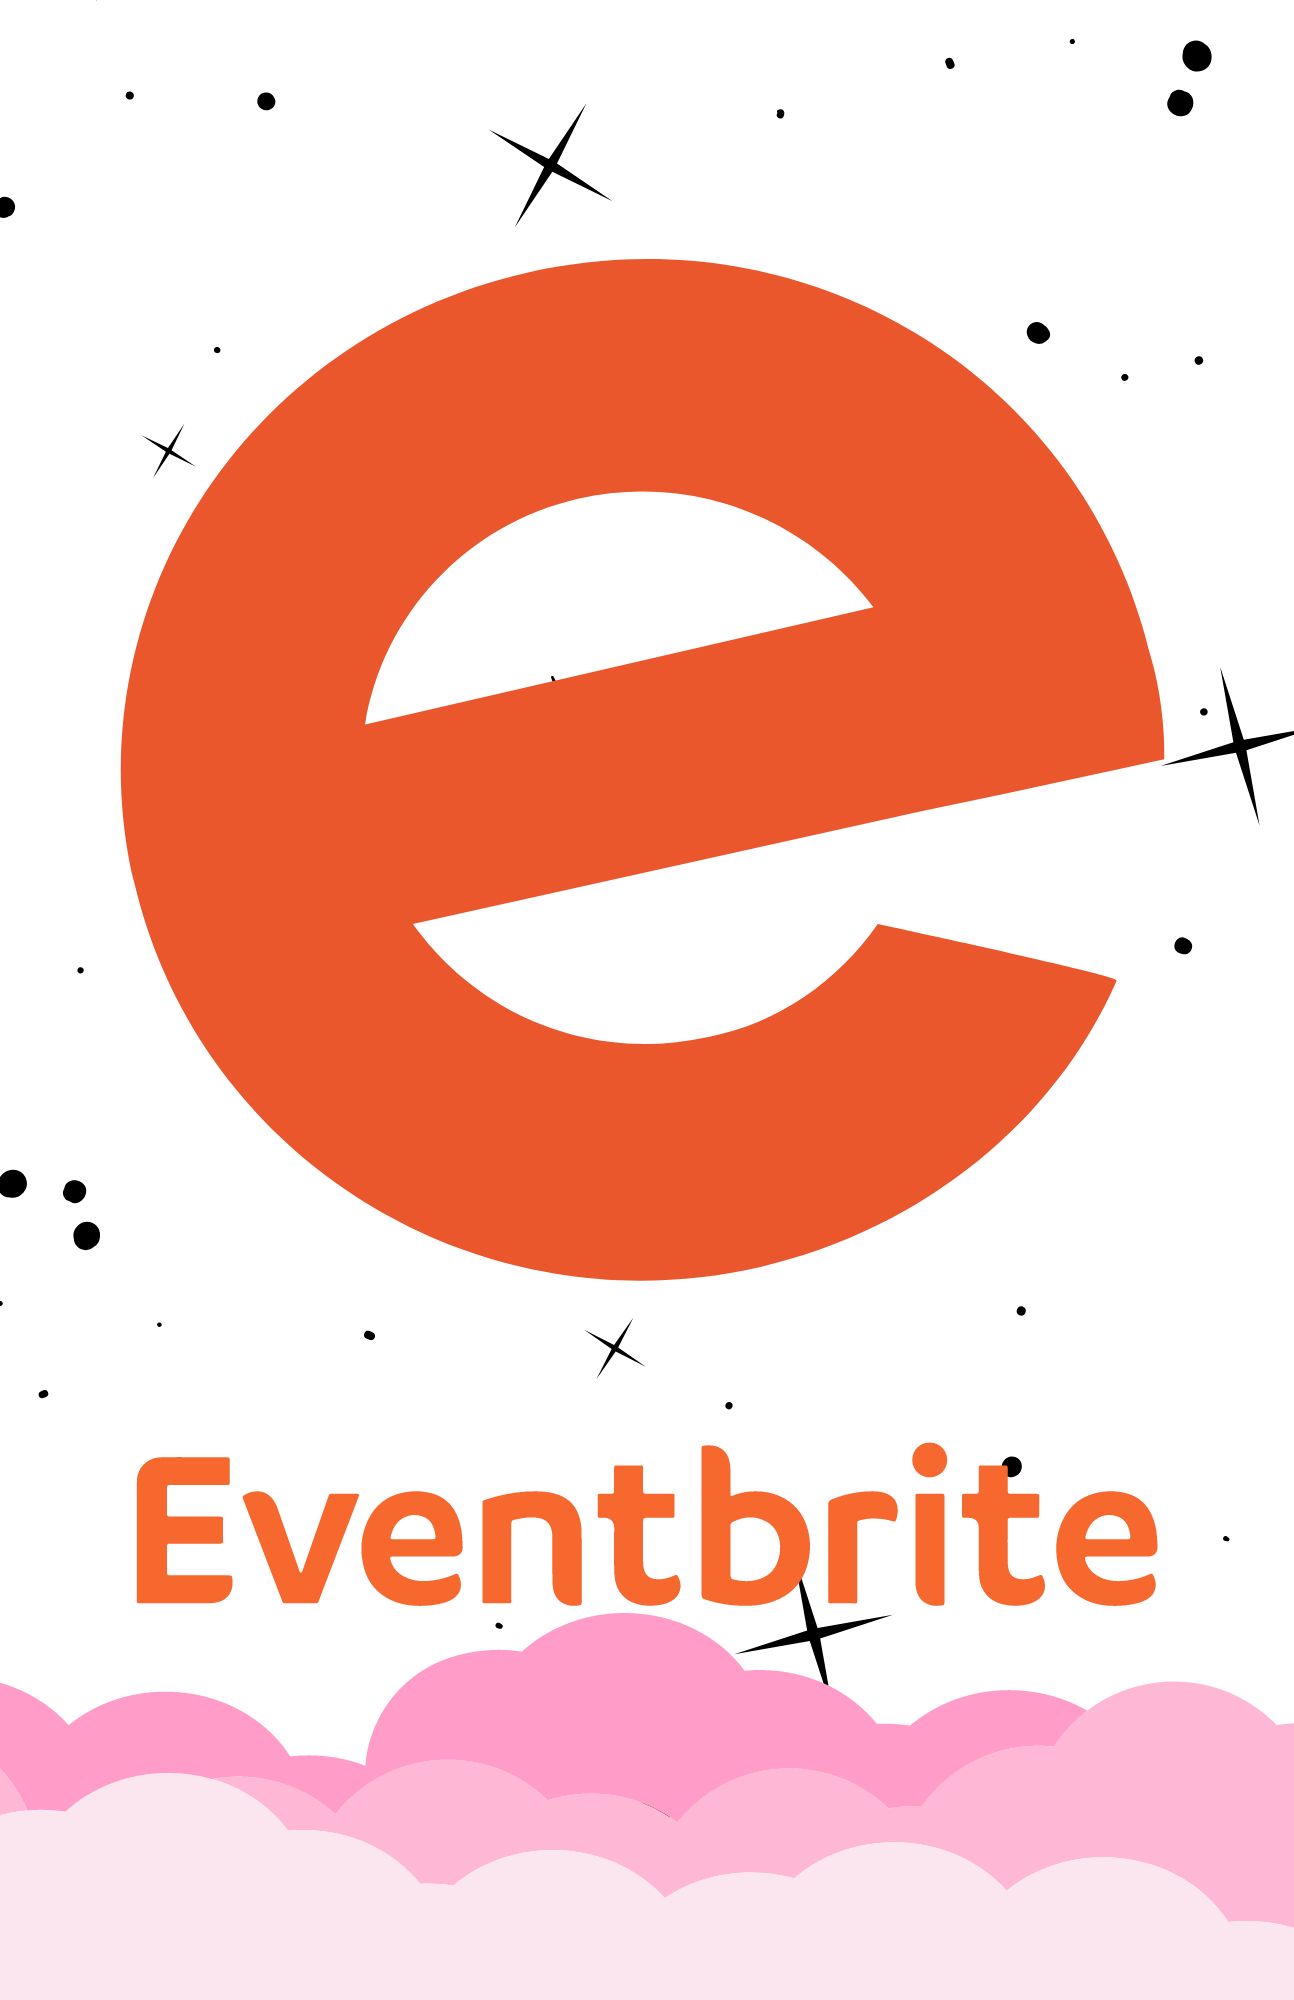 Event Registration